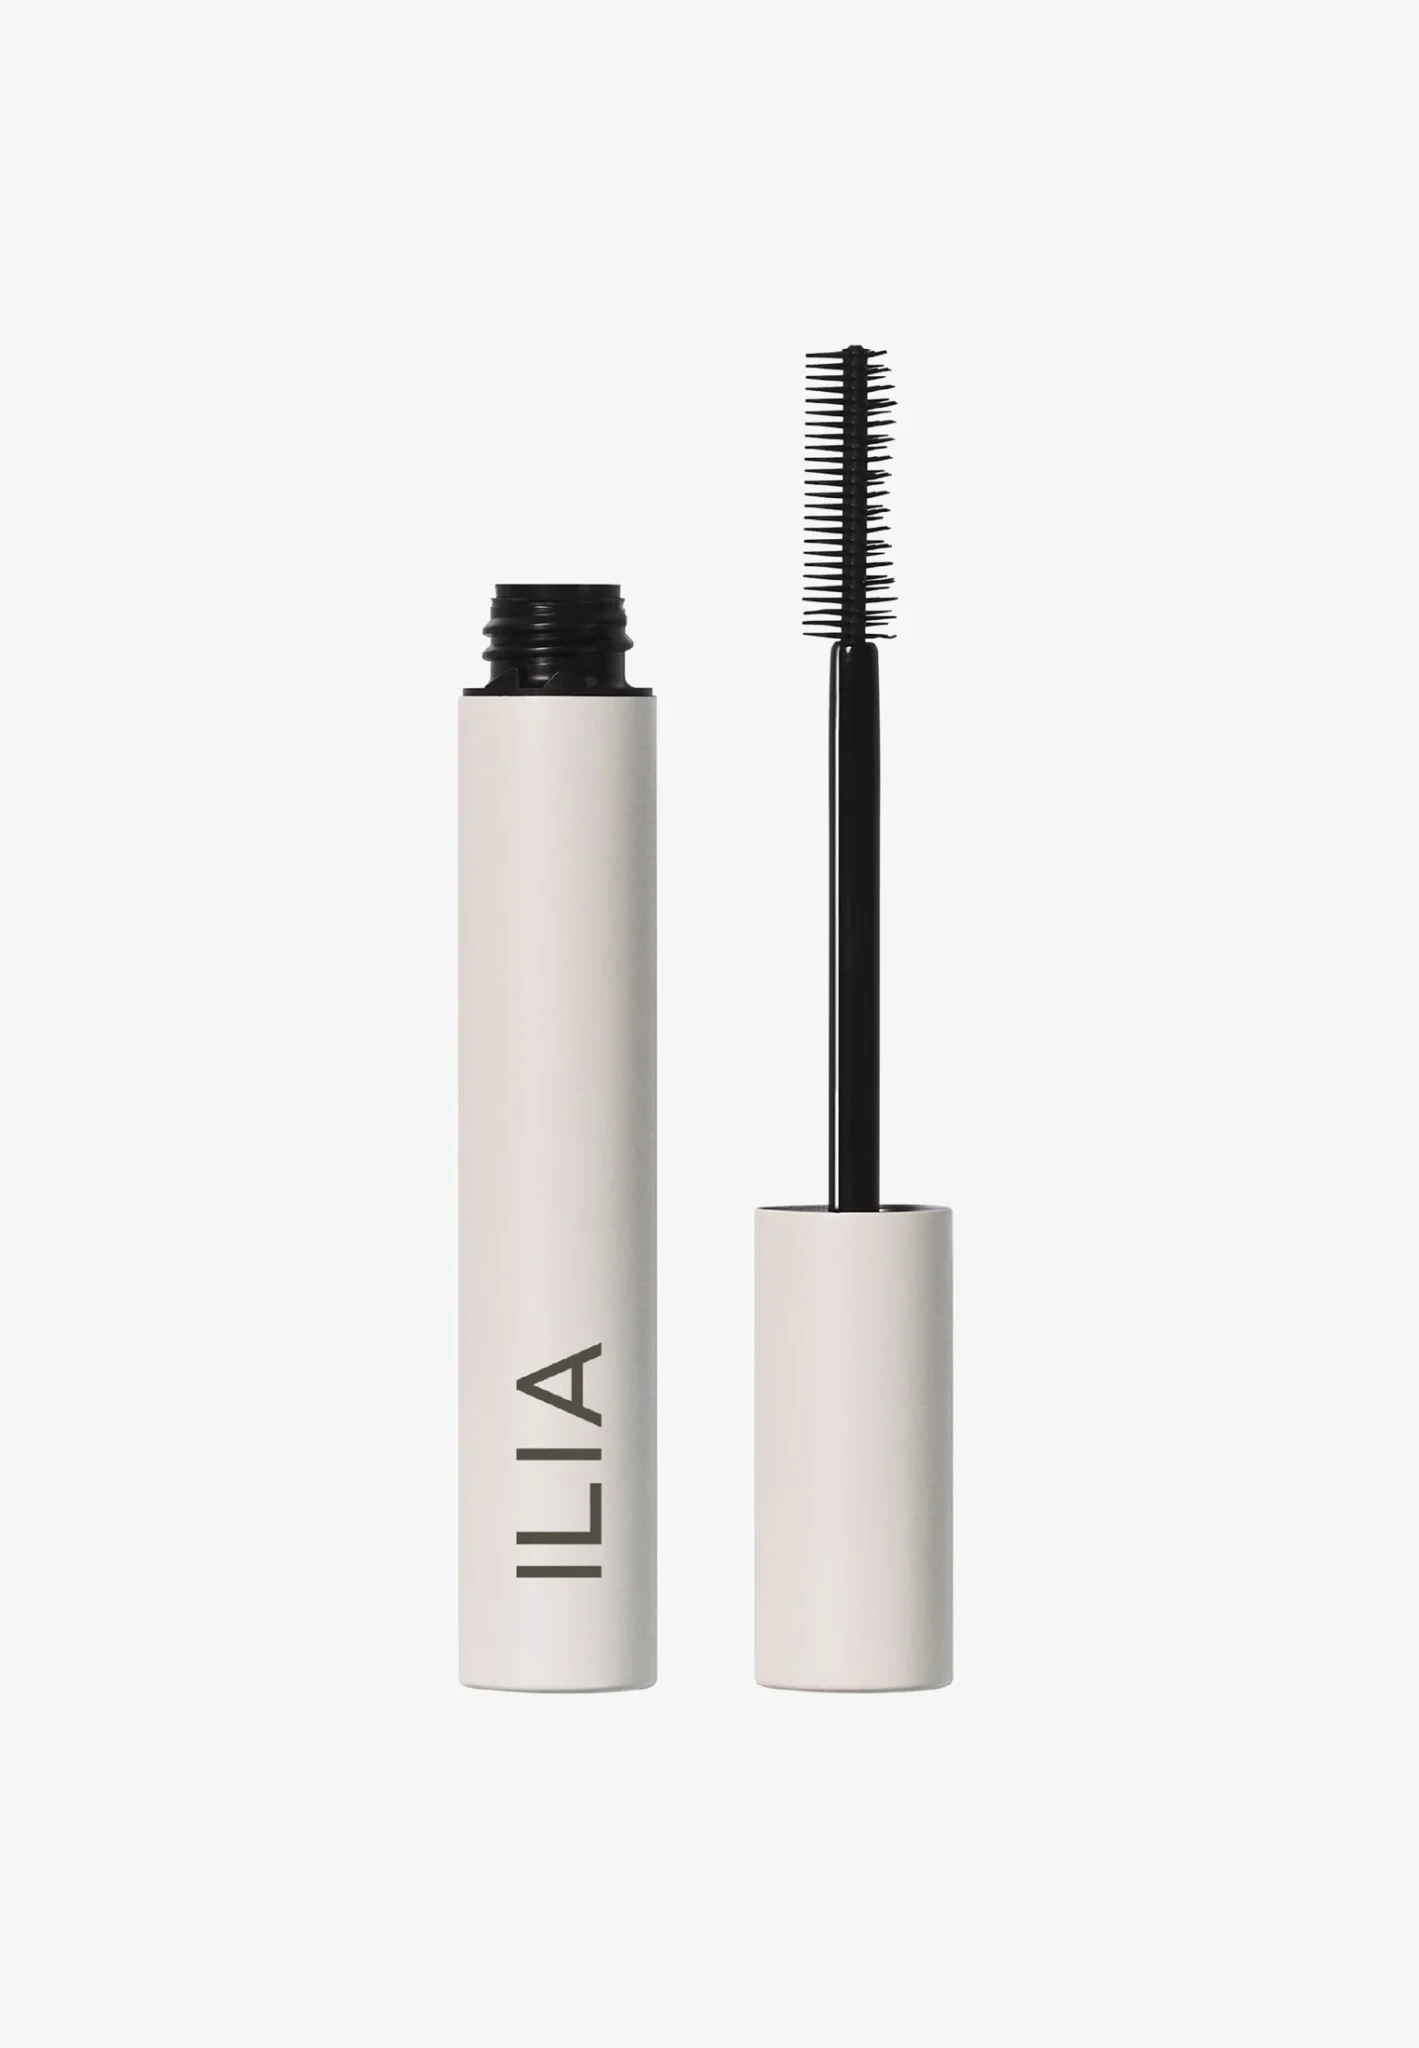 Limitless Lash Mascara Allongeant Ilia, packaging entièrement blanc avec l'inscription Ilia en noir